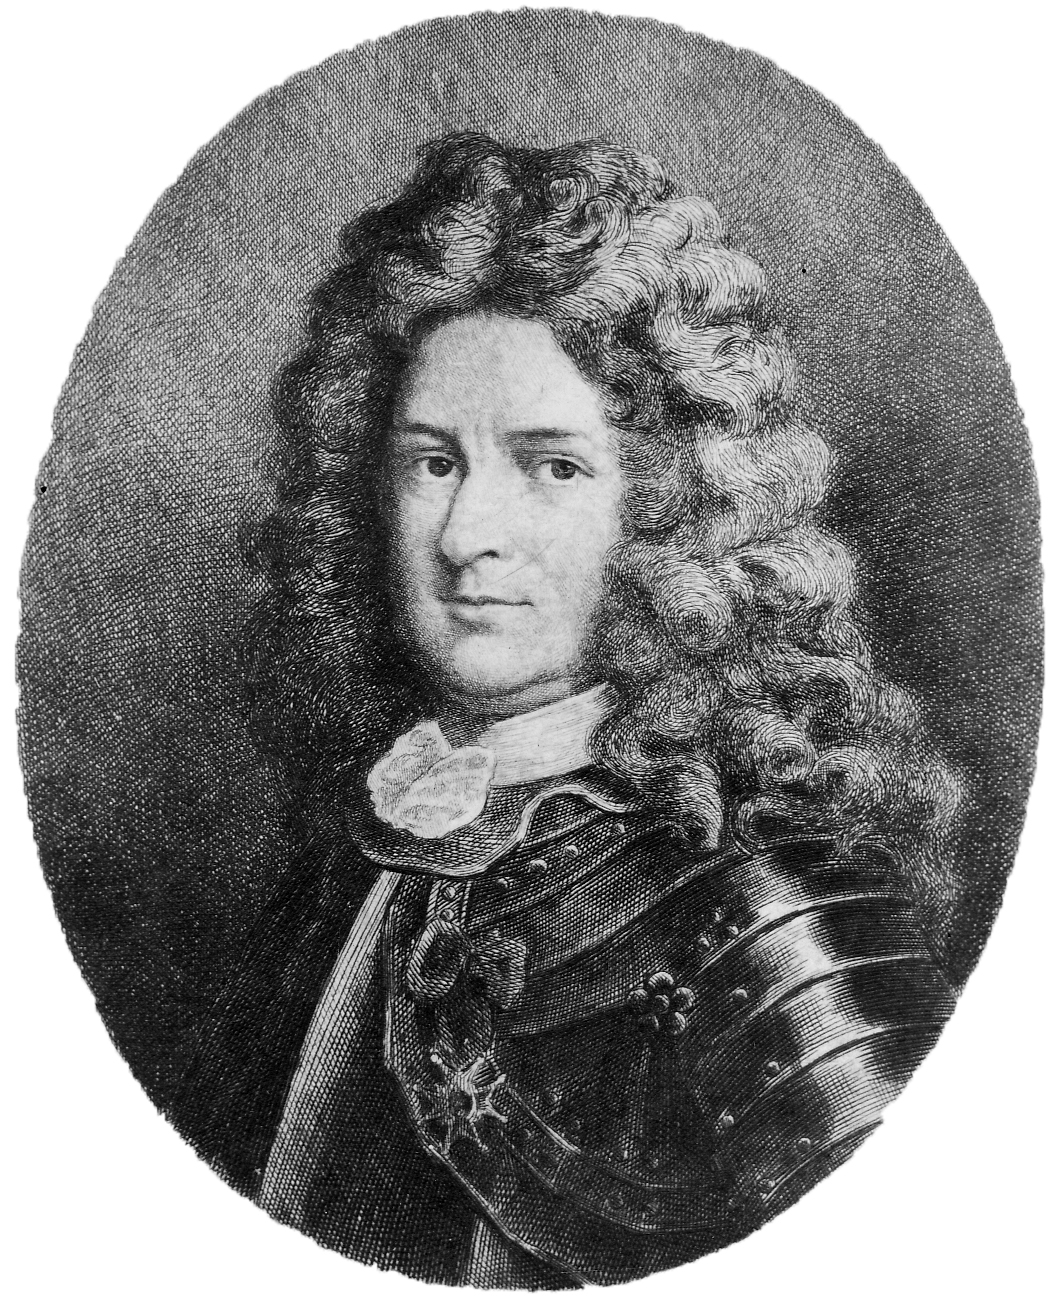 Pierre Le Moyne d'Iberville